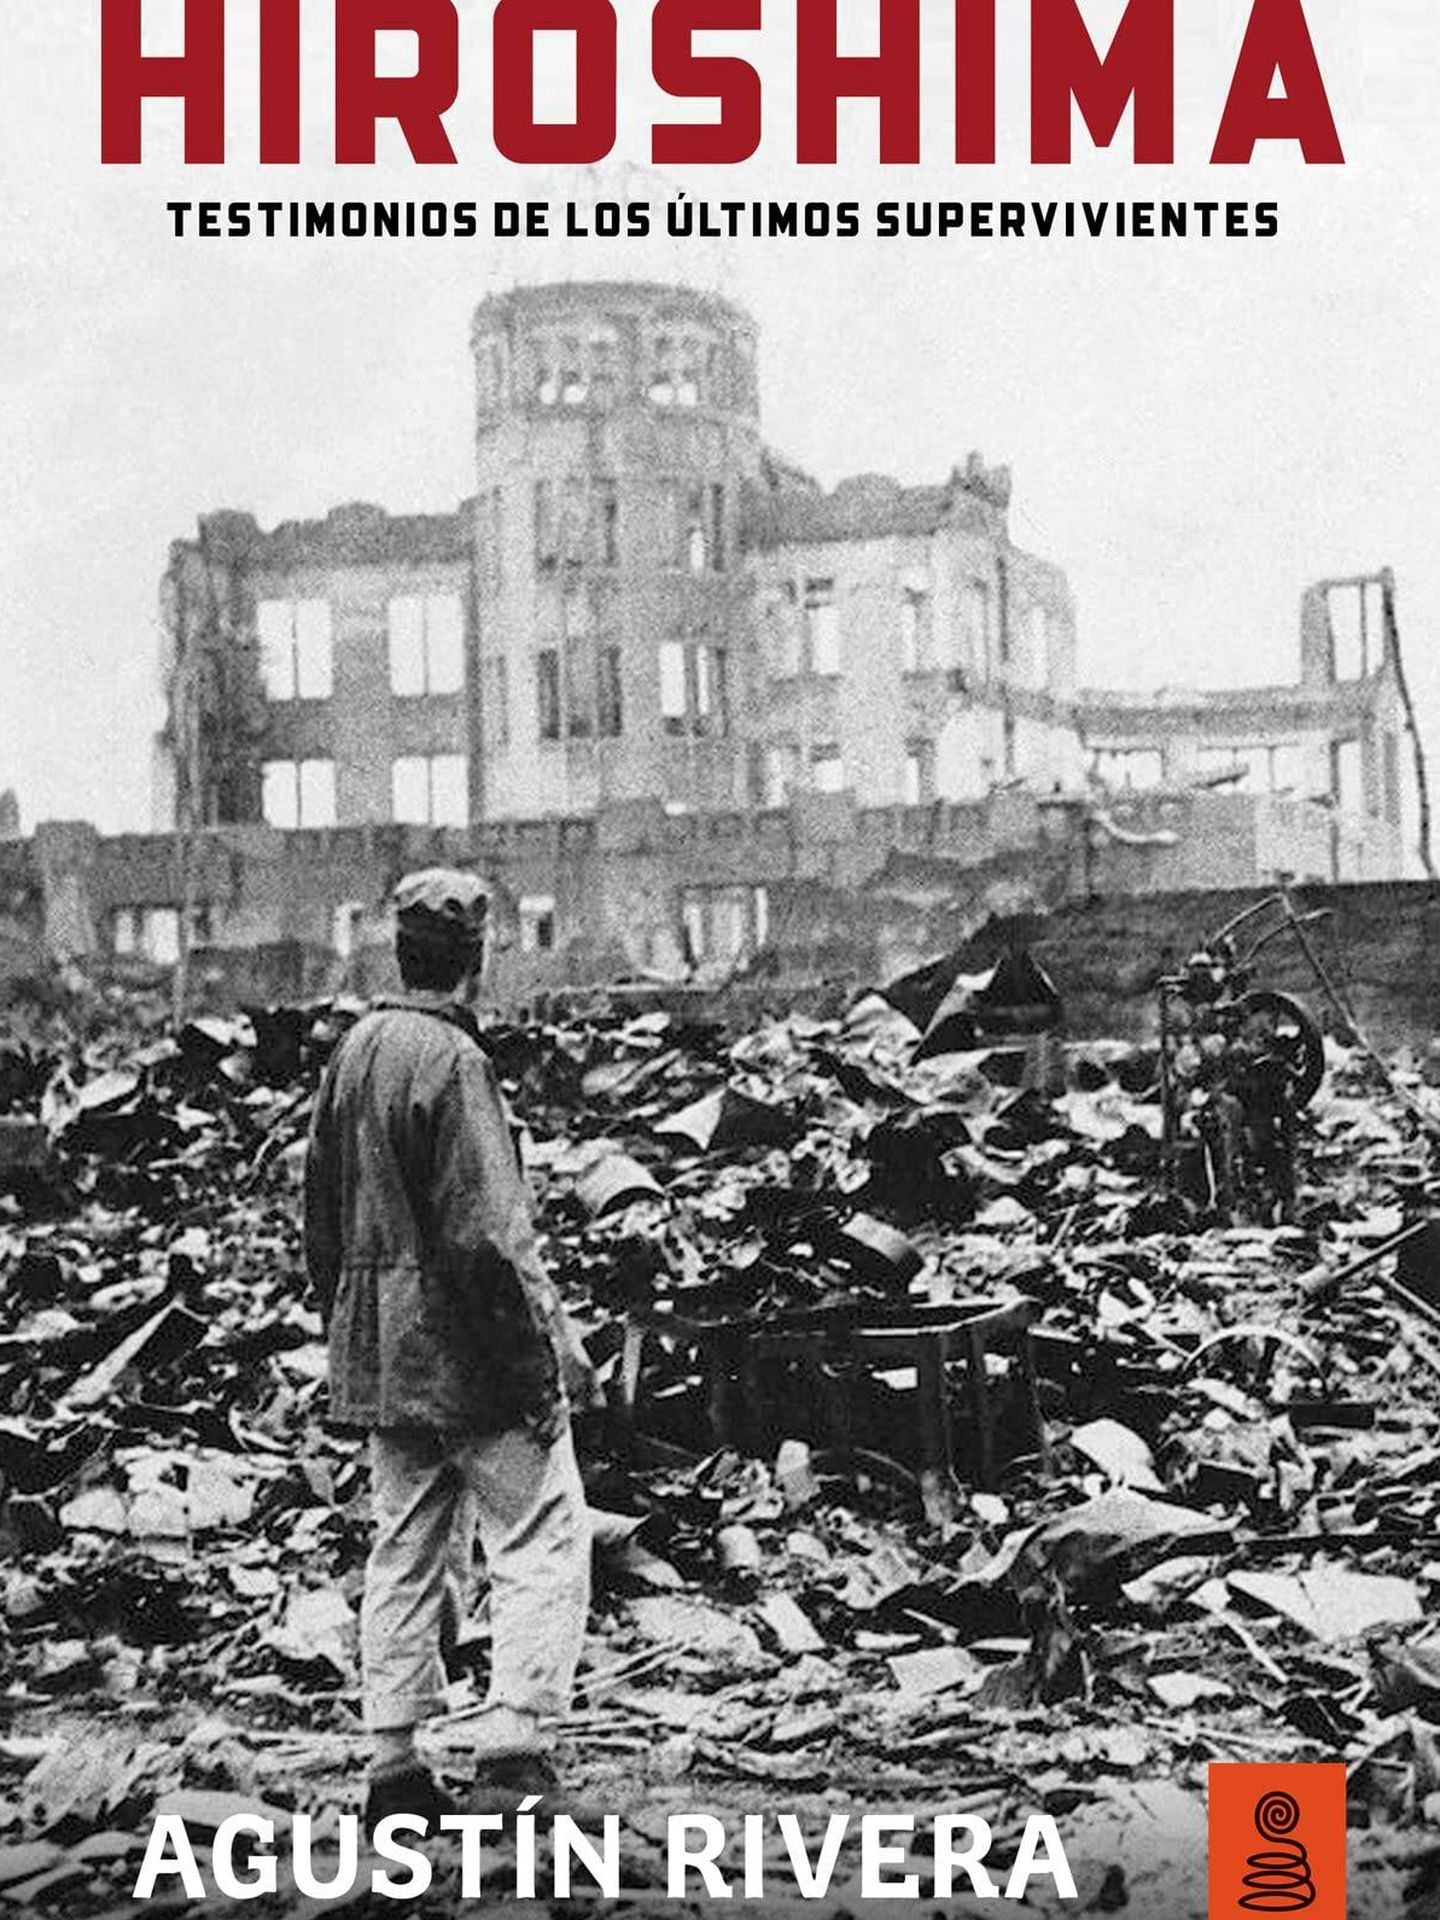 Portada de 'Hiroshima: testimonios de los últimos supervivientes', del ex corresponsal en Japón Agustín Rivera.